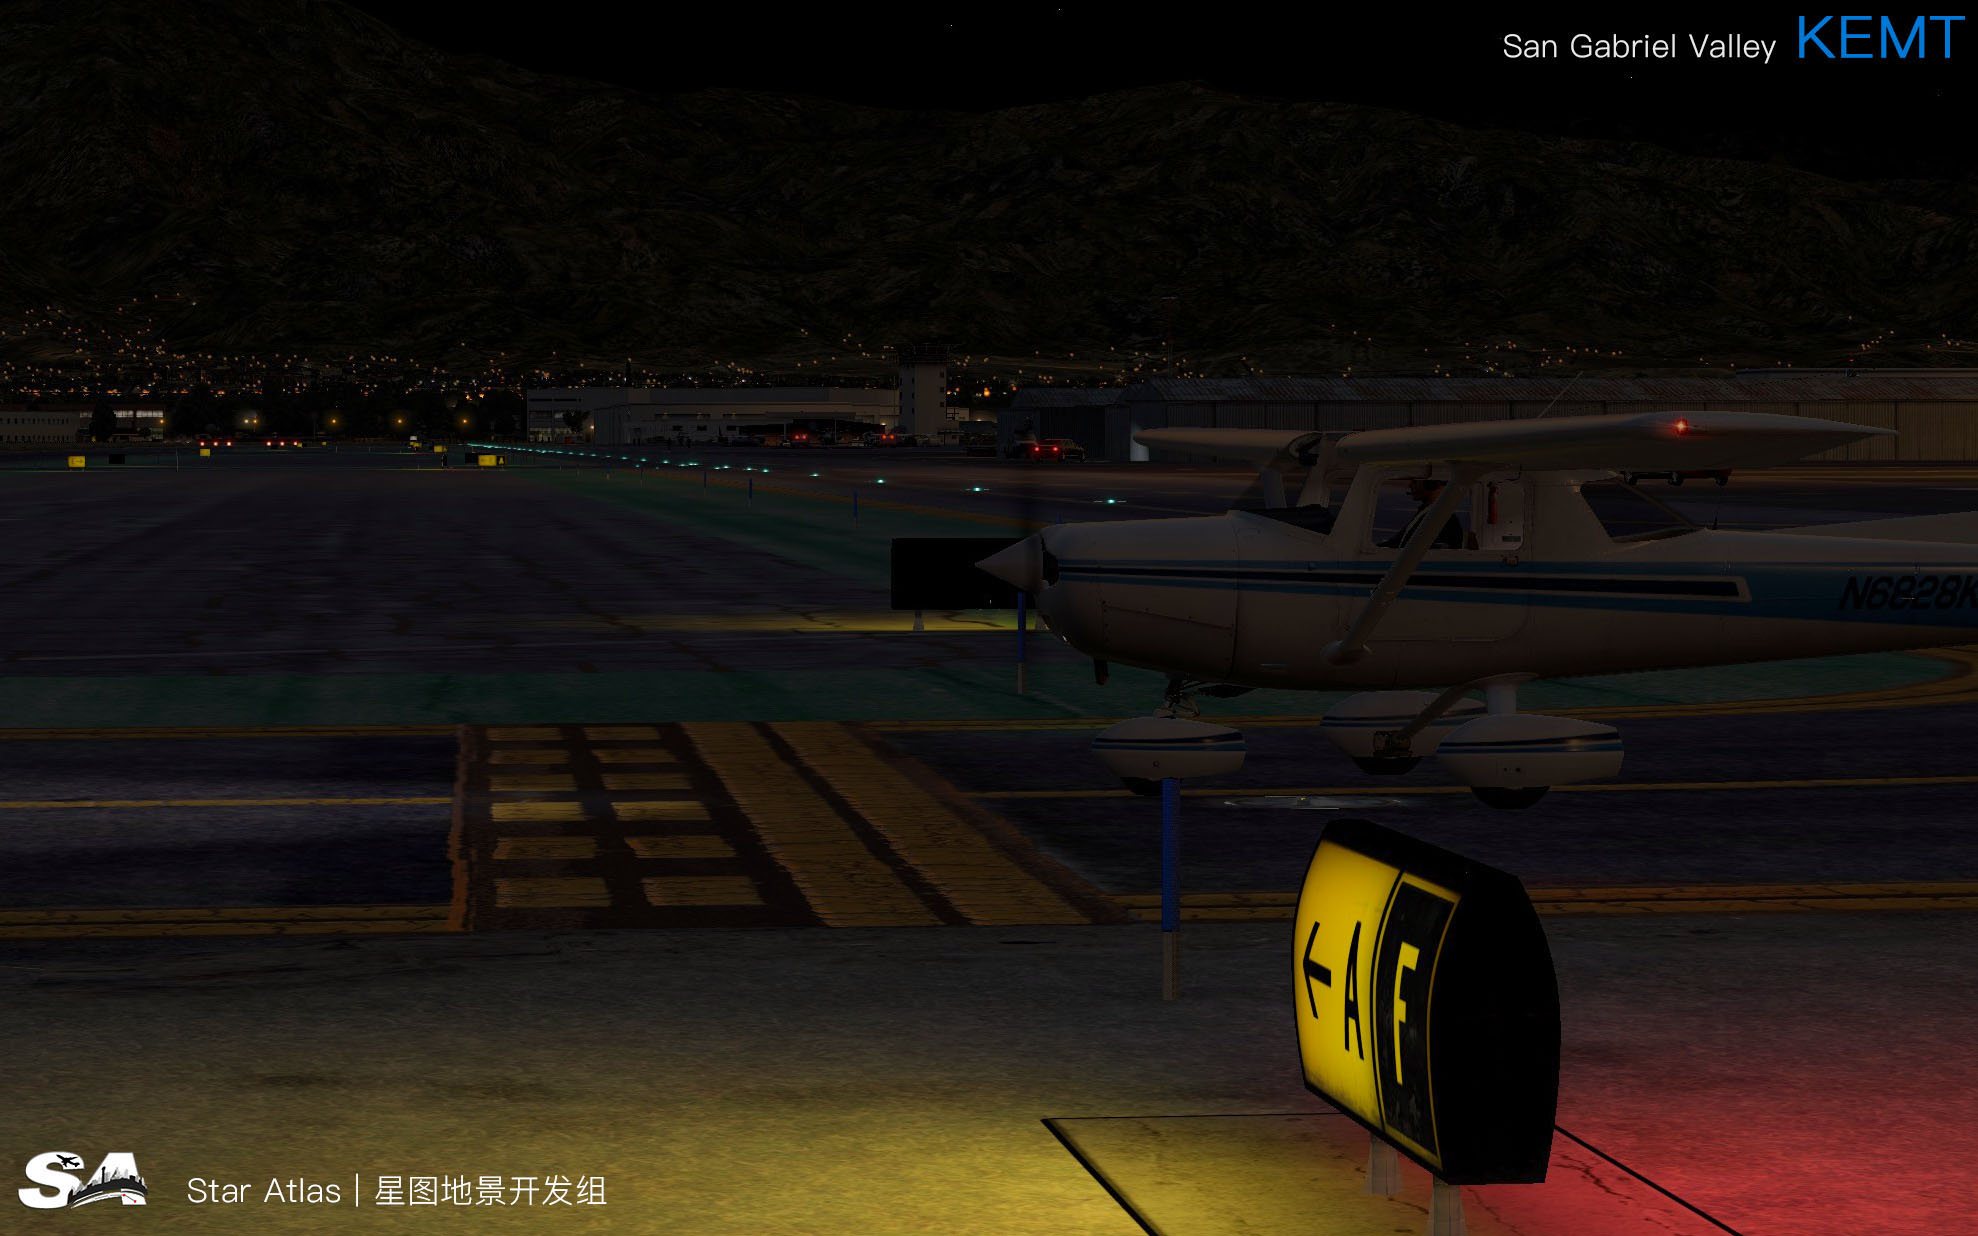 【X-Plane】KEMT-圣盖博谷机场 HD 1.0-2672 